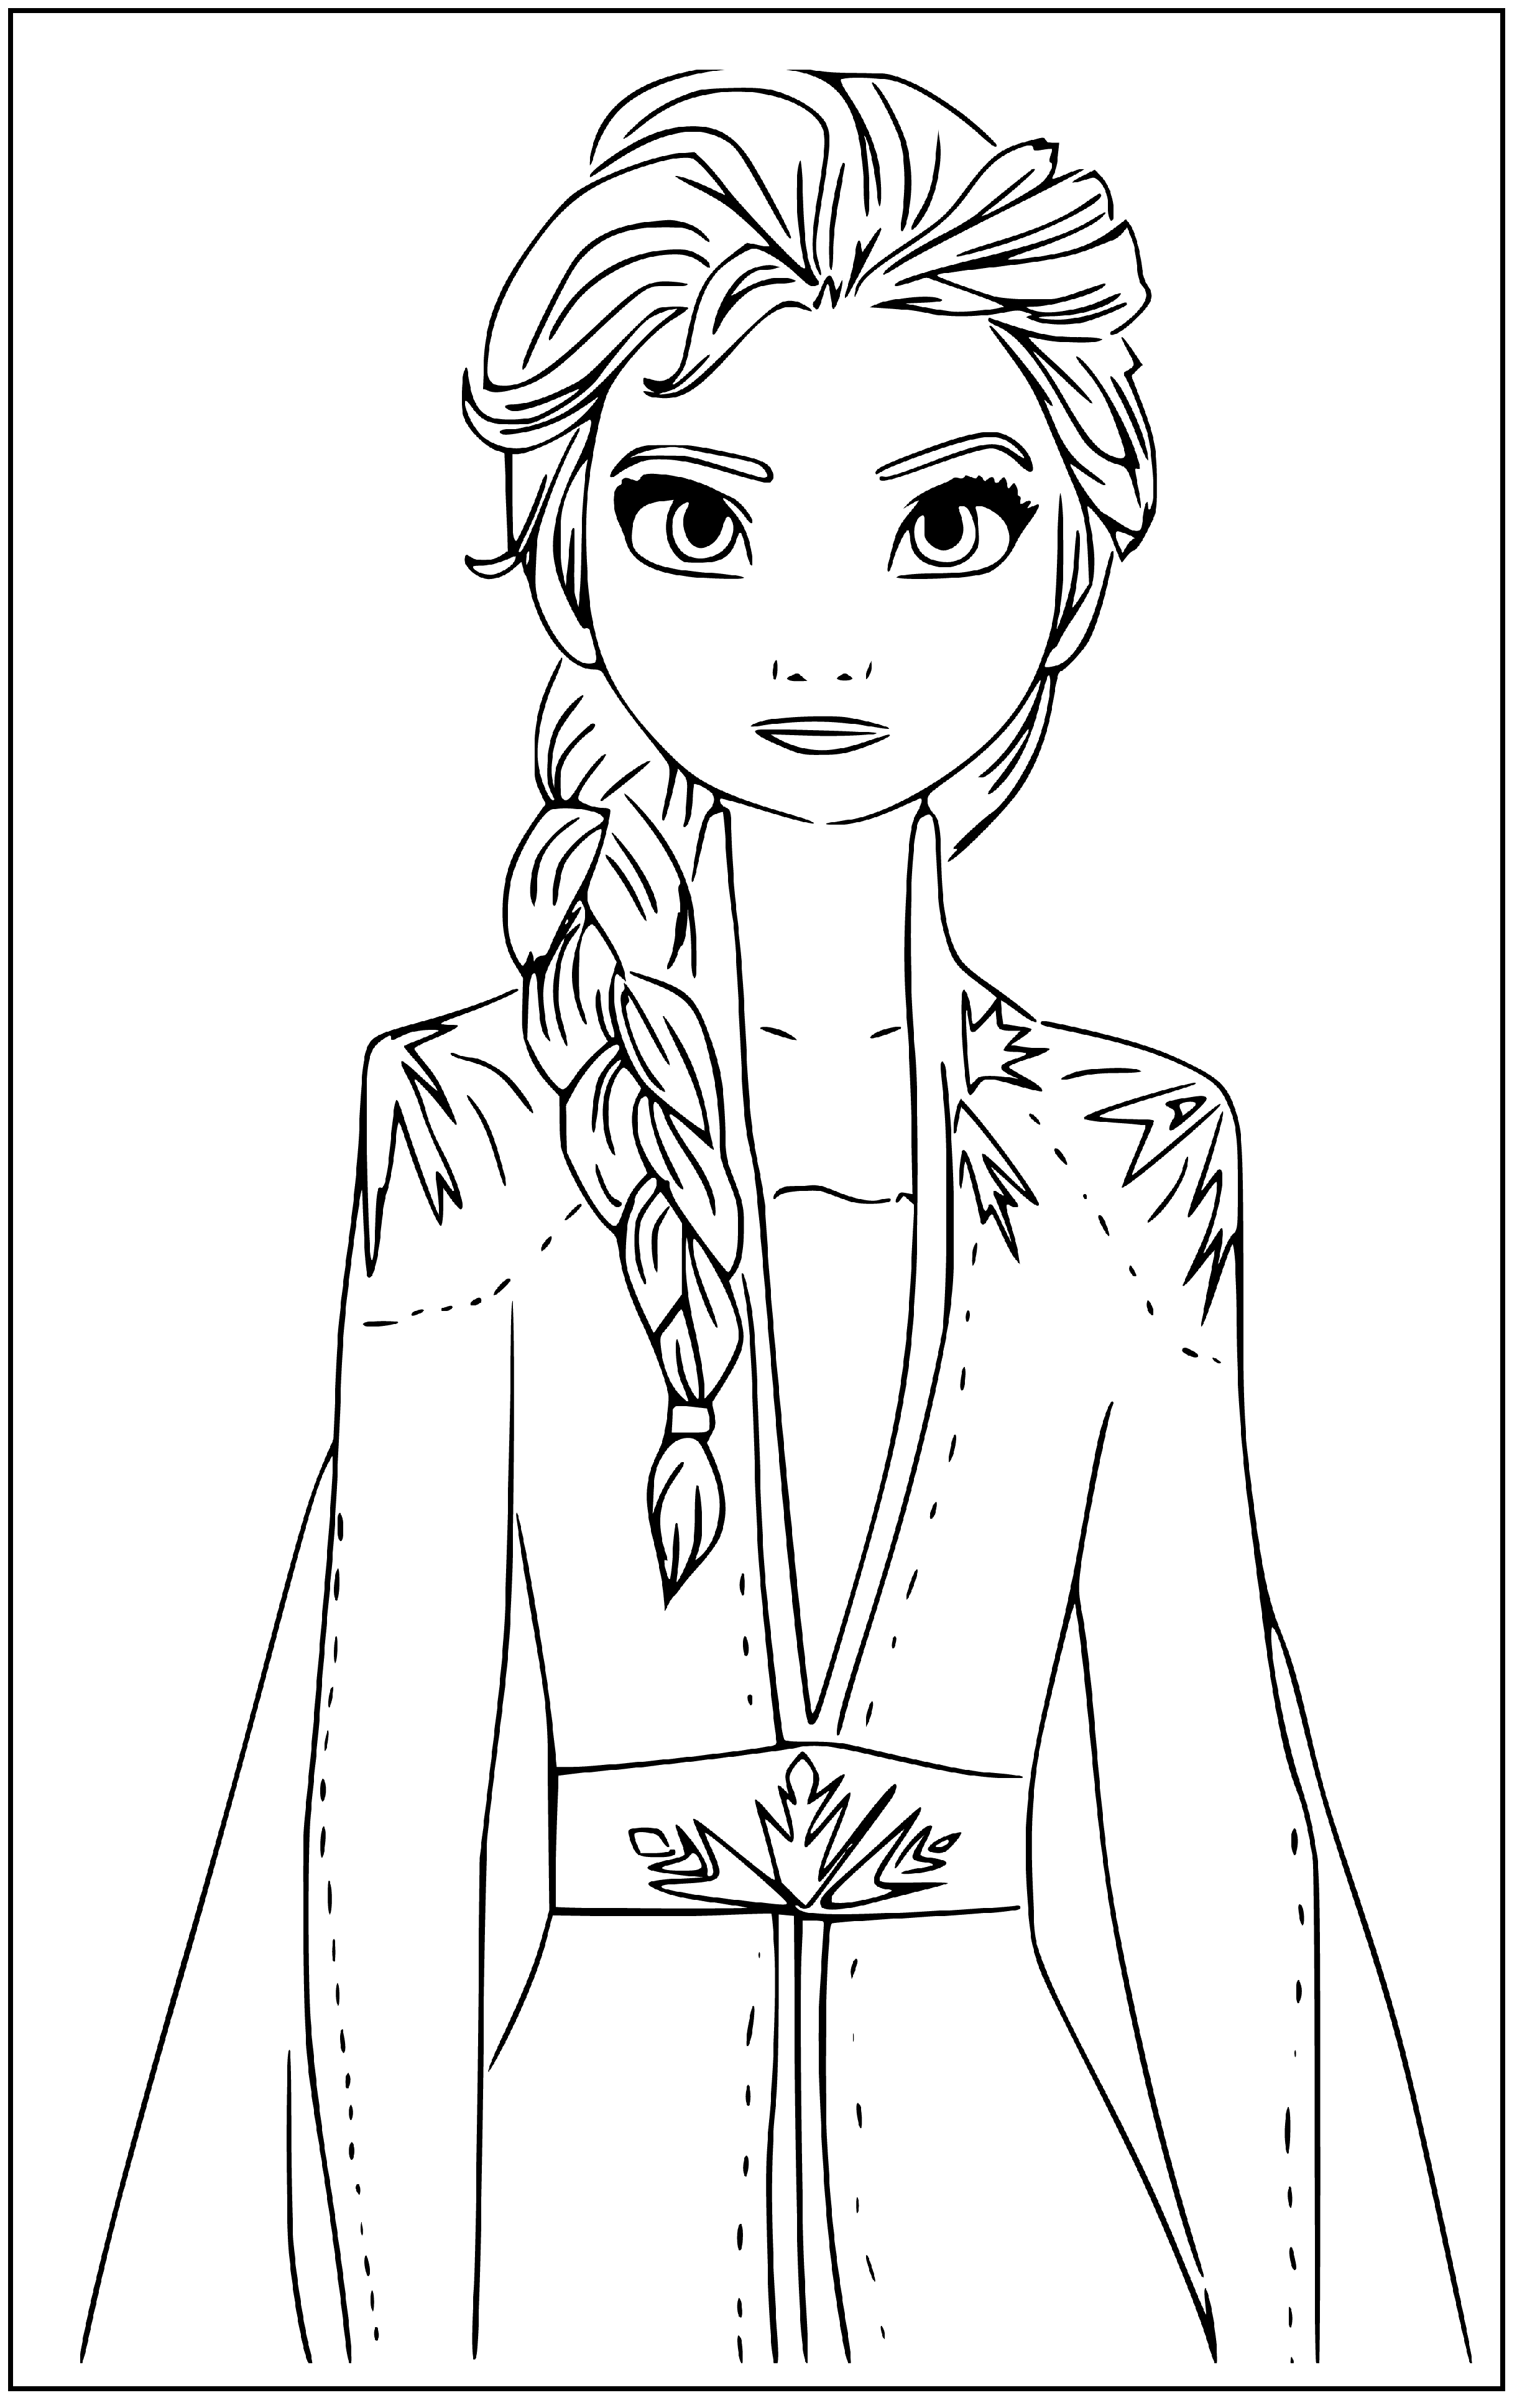 Printable Princess Elsa Portrait Coloring Page for kids.